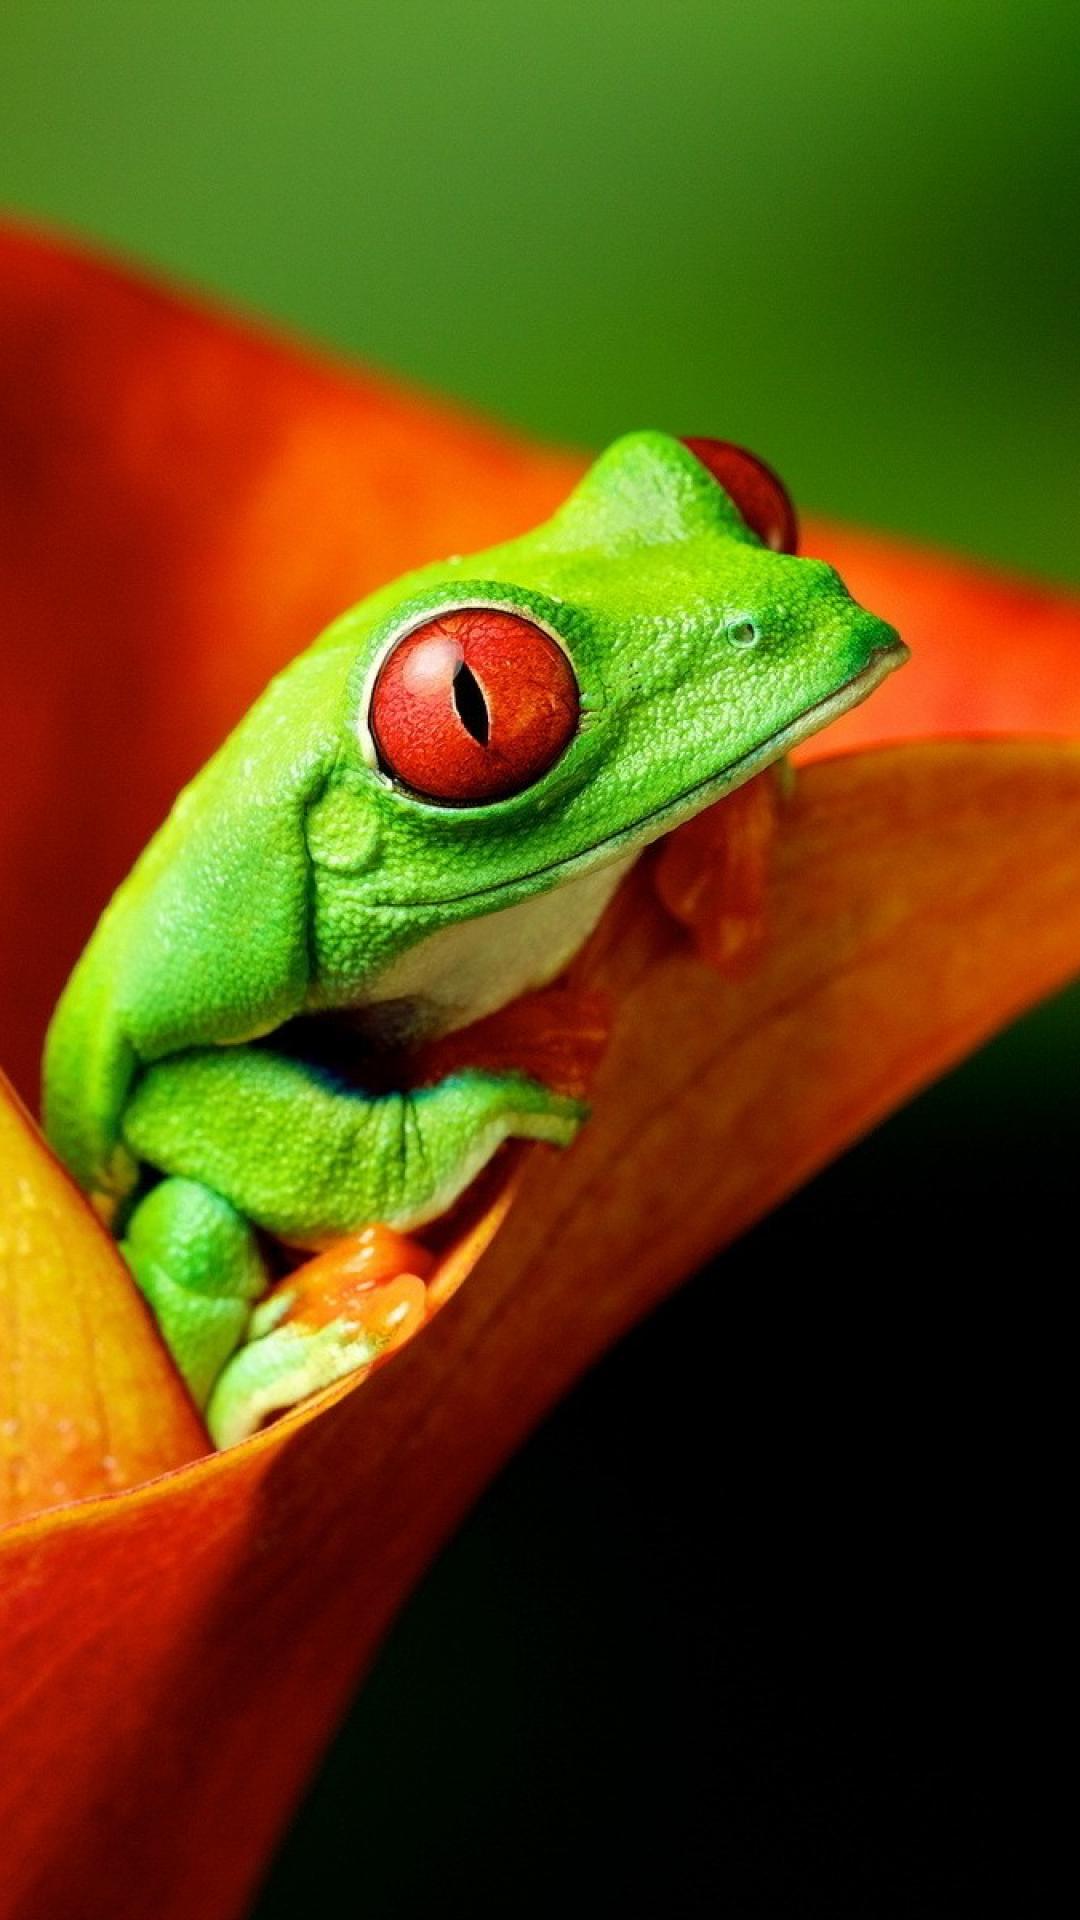 fond d'écran mignon grenouille,grenouille,rainette,grenouille aux yeux rouges,rainette,vert